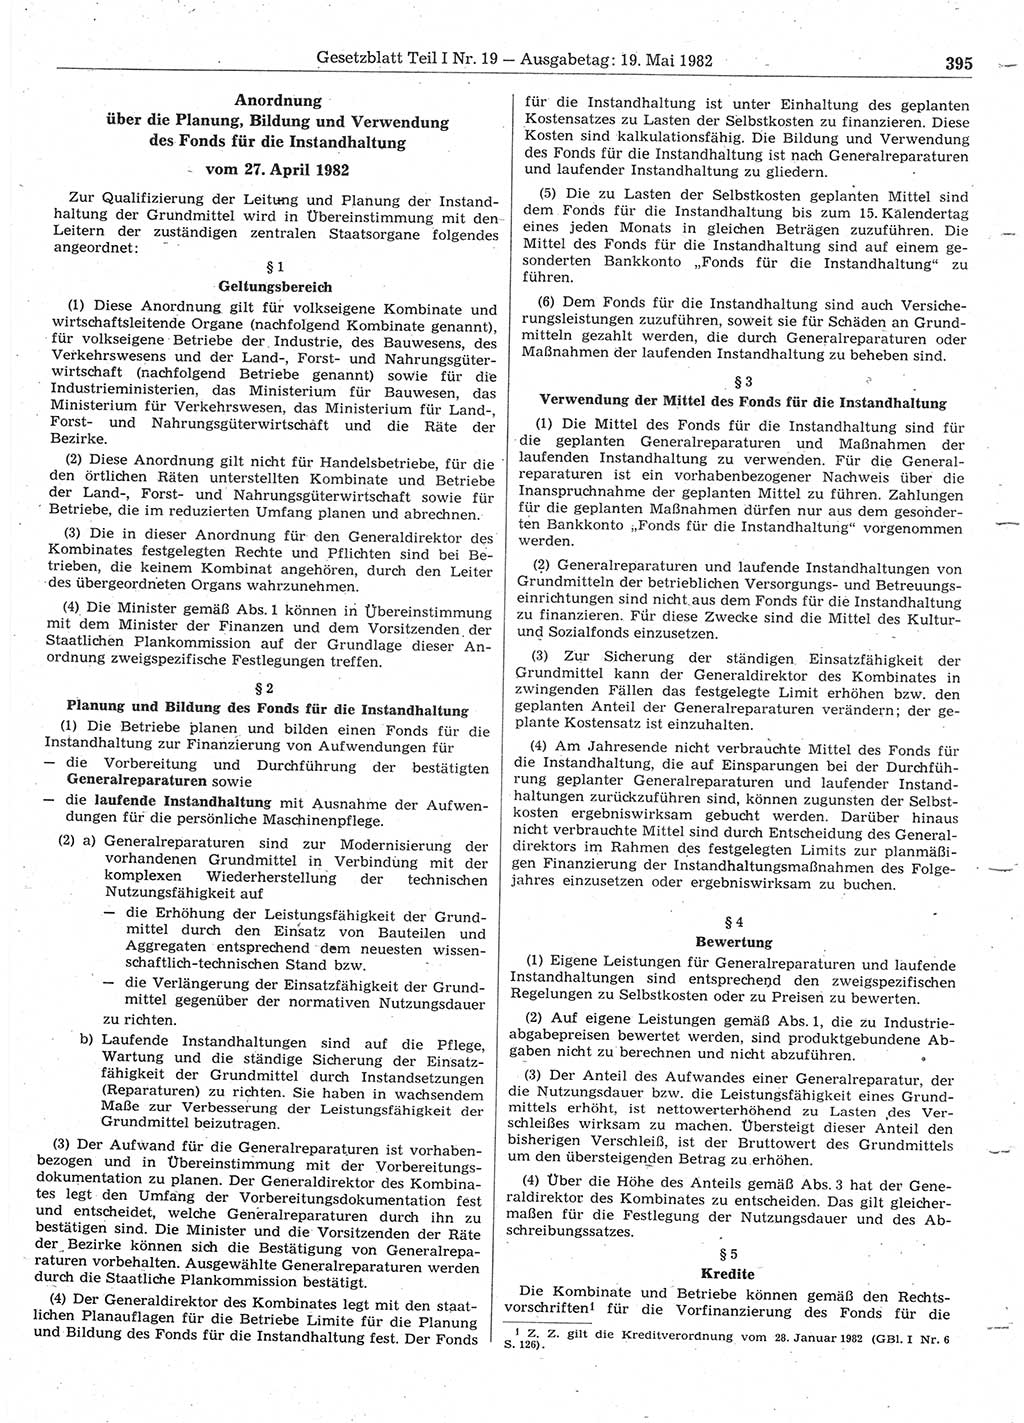 Gesetzblatt (GBl.) der Deutschen Demokratischen Republik (DDR) Teil Ⅰ 1982, Seite 395 (GBl. DDR Ⅰ 1982, S. 395)